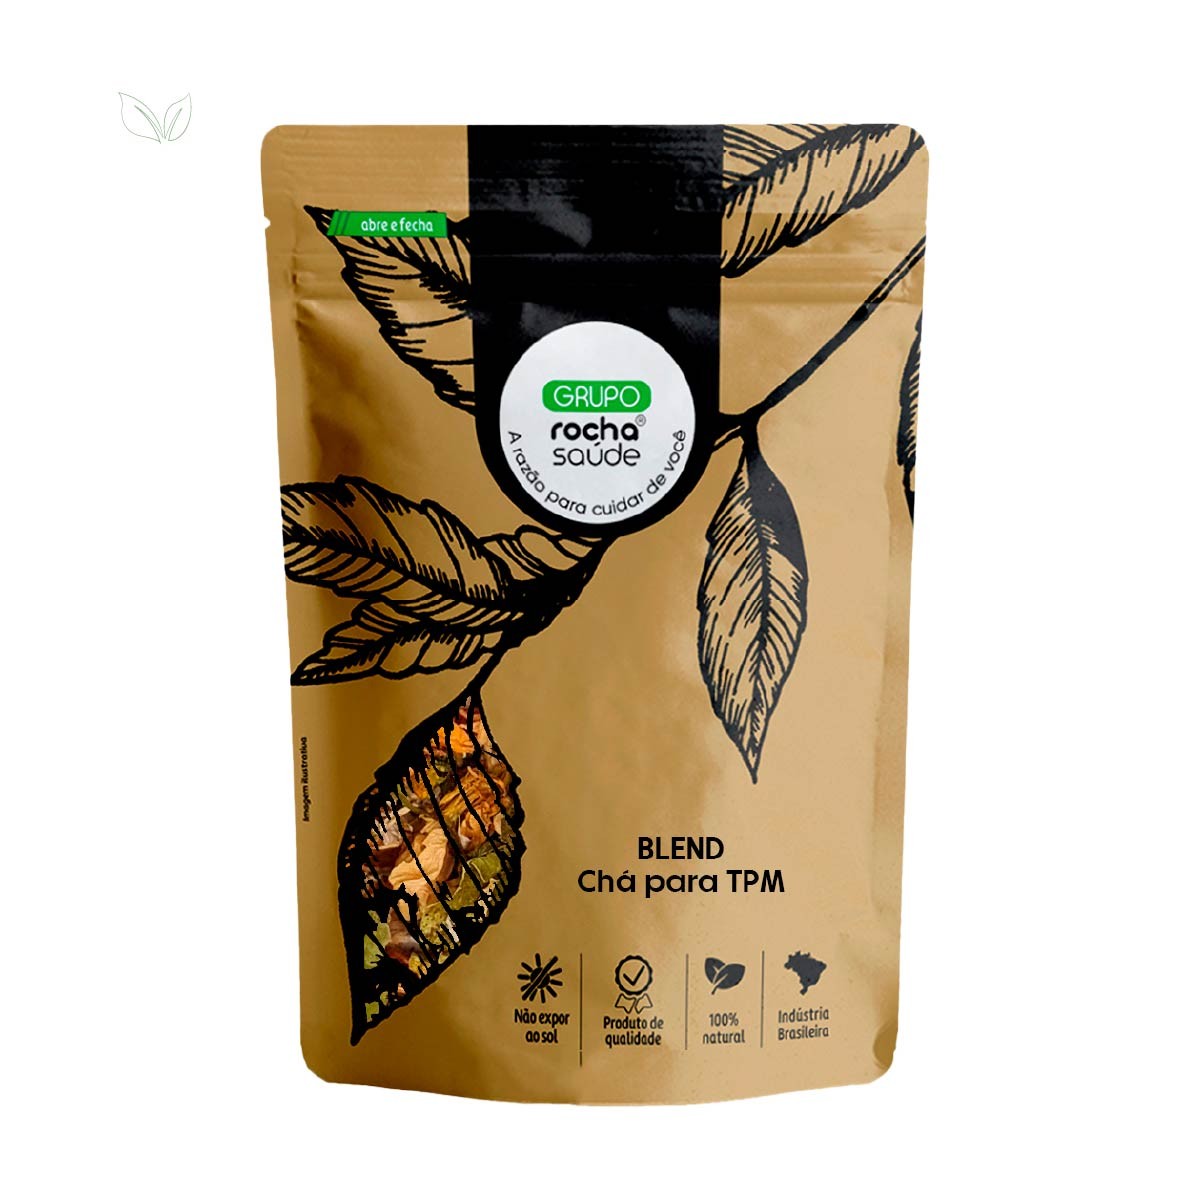 Blend - Chá para TPM - 100% Natural - Alta Qualidade